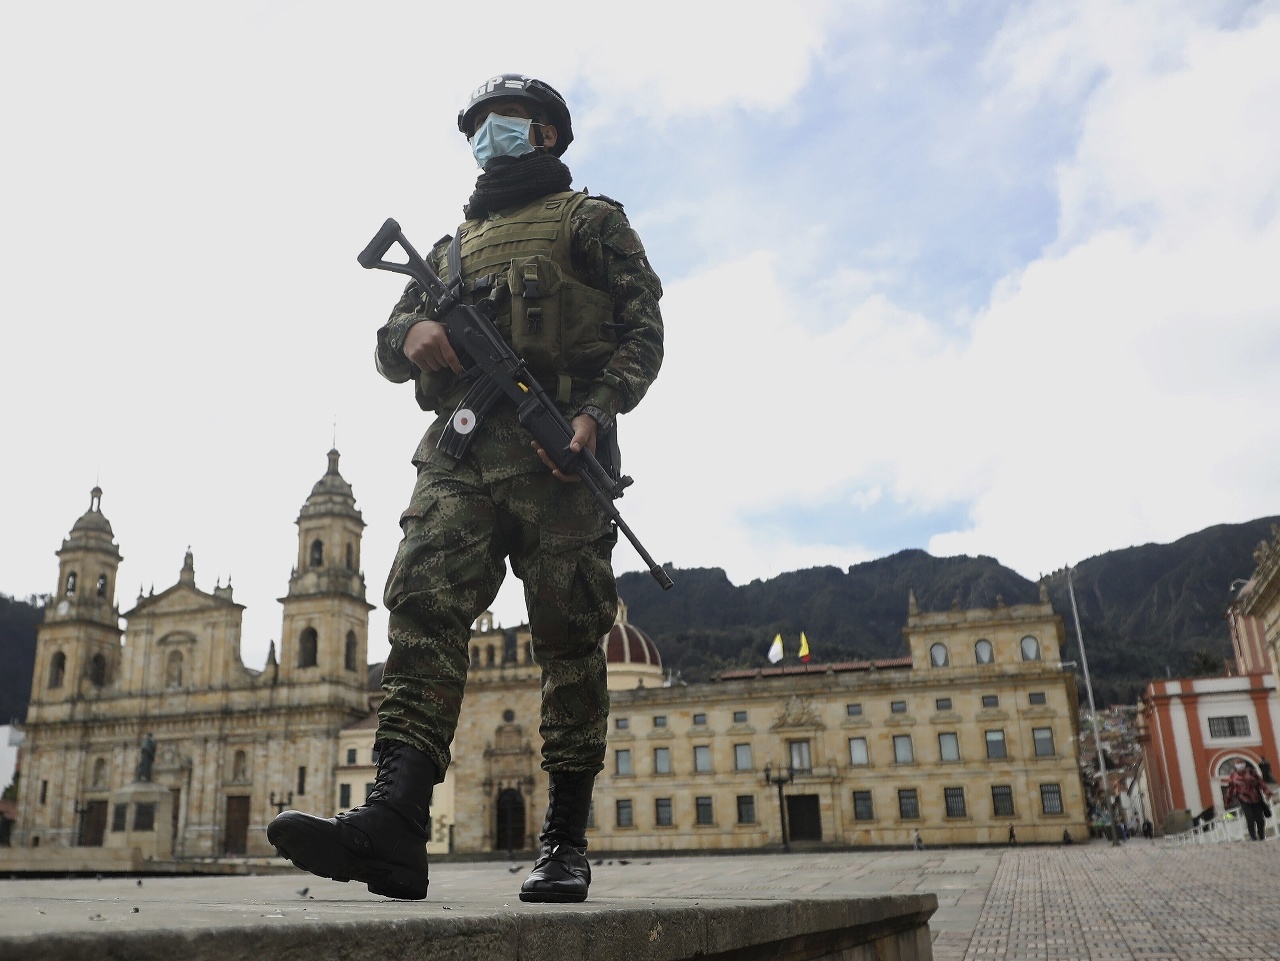 Vojak, ktorý má ochrannú masku, kráča na Bolivarovom námestí v Bogote v Kolumbii v utorok 21. júla 2020, Ilustračné foto